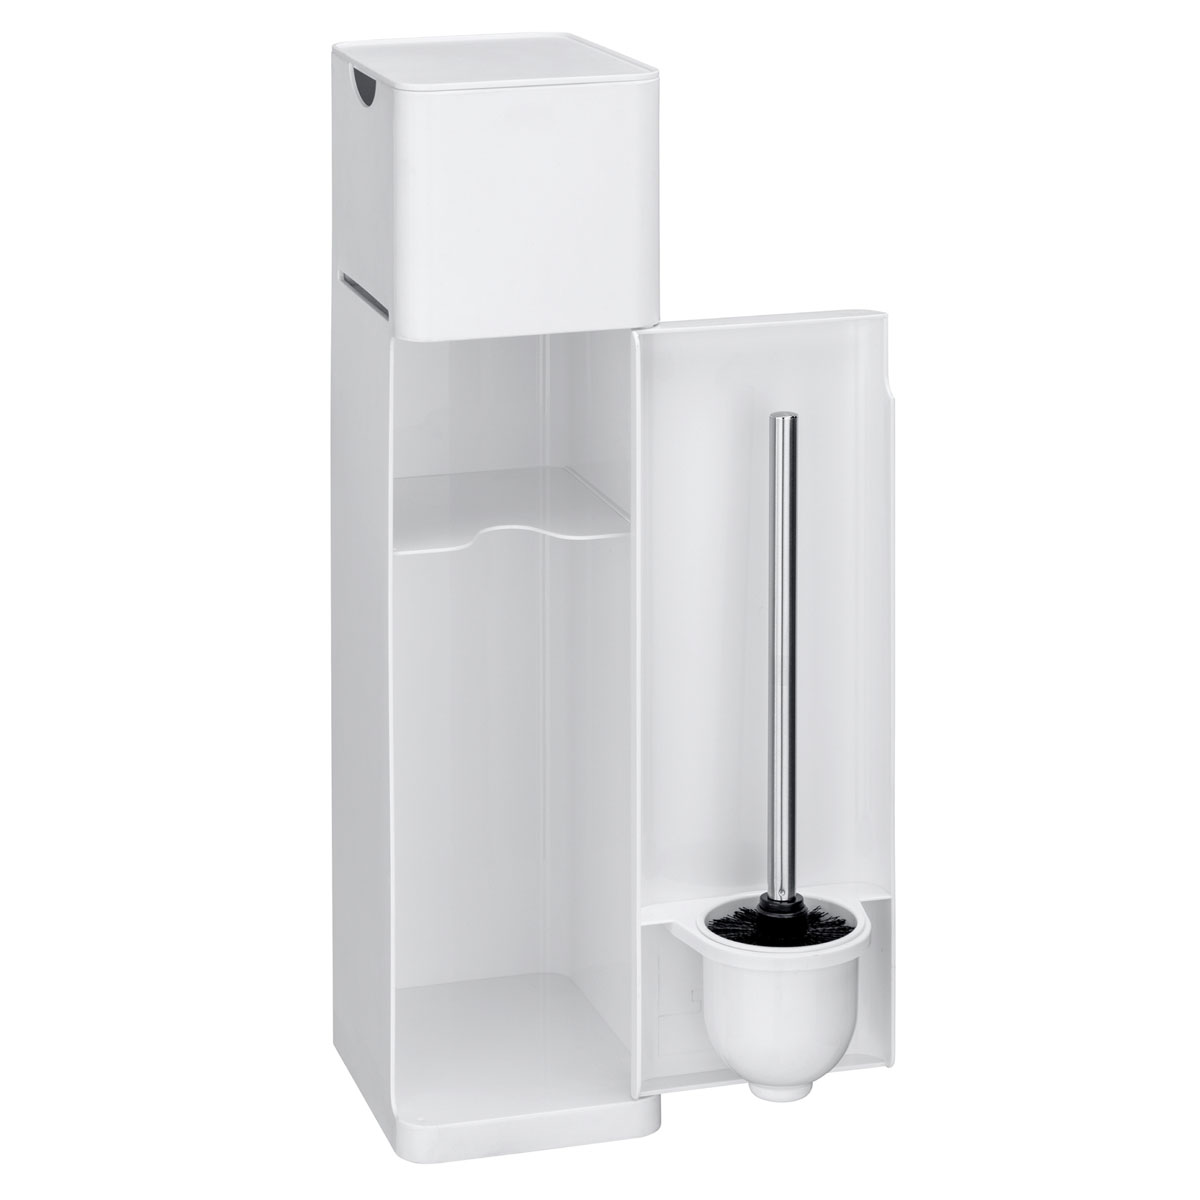 WC-Garnitur | Weiß Wenko Ablage in Stand 6 WC-Bürstenhalter und matt Imon 514825 Toilettenpapierhalter 1 Ersatzrollenhalter integrierter Stauraumfächer